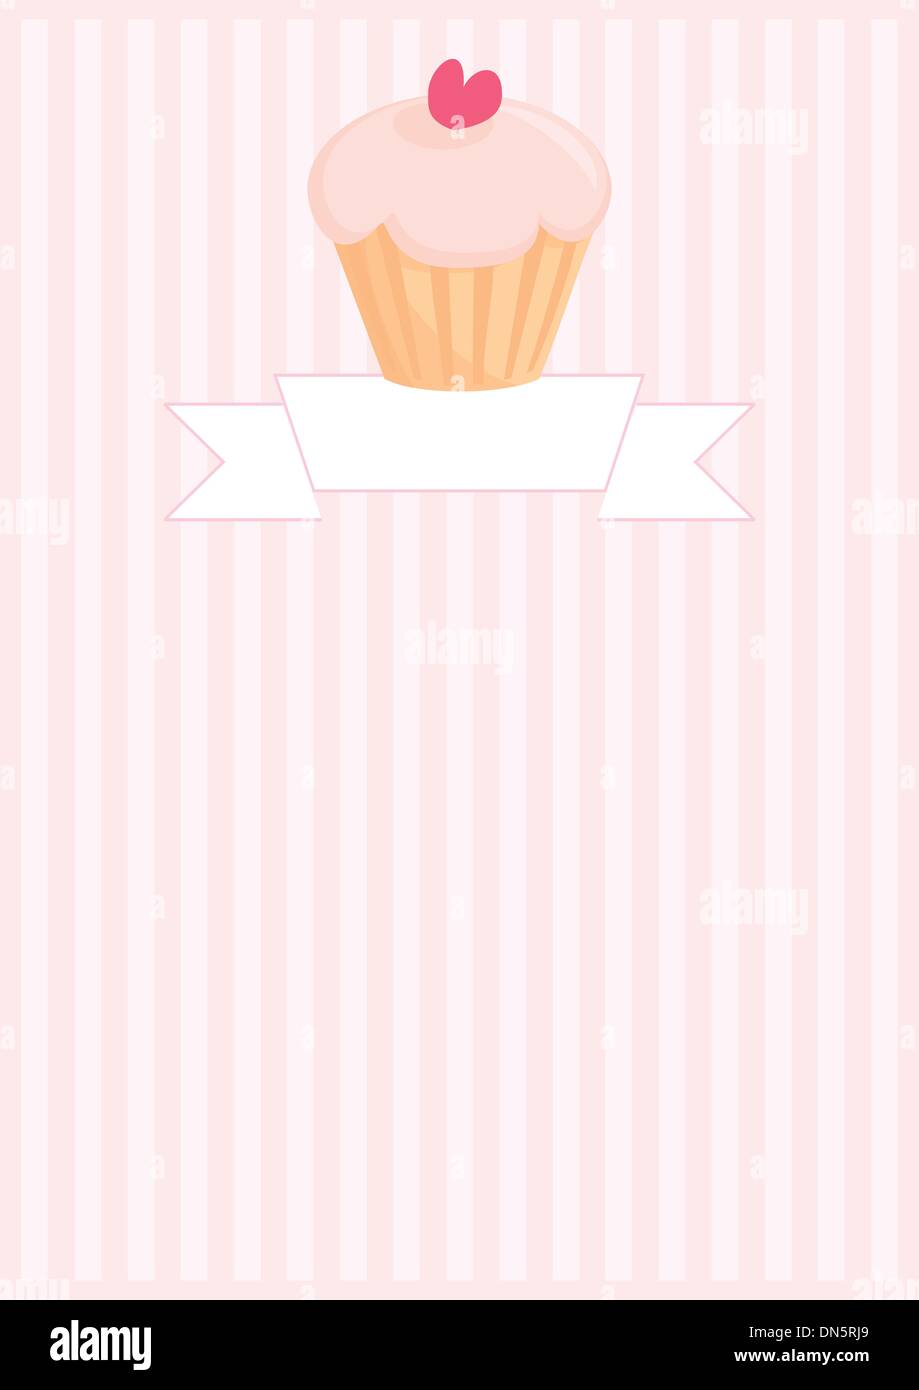 Bouton de vecteur, restaurant carte des menus, liste ou d'invitation de mariage avec sweet muffin cupcake, fond rose et coeur Illustration de Vecteur